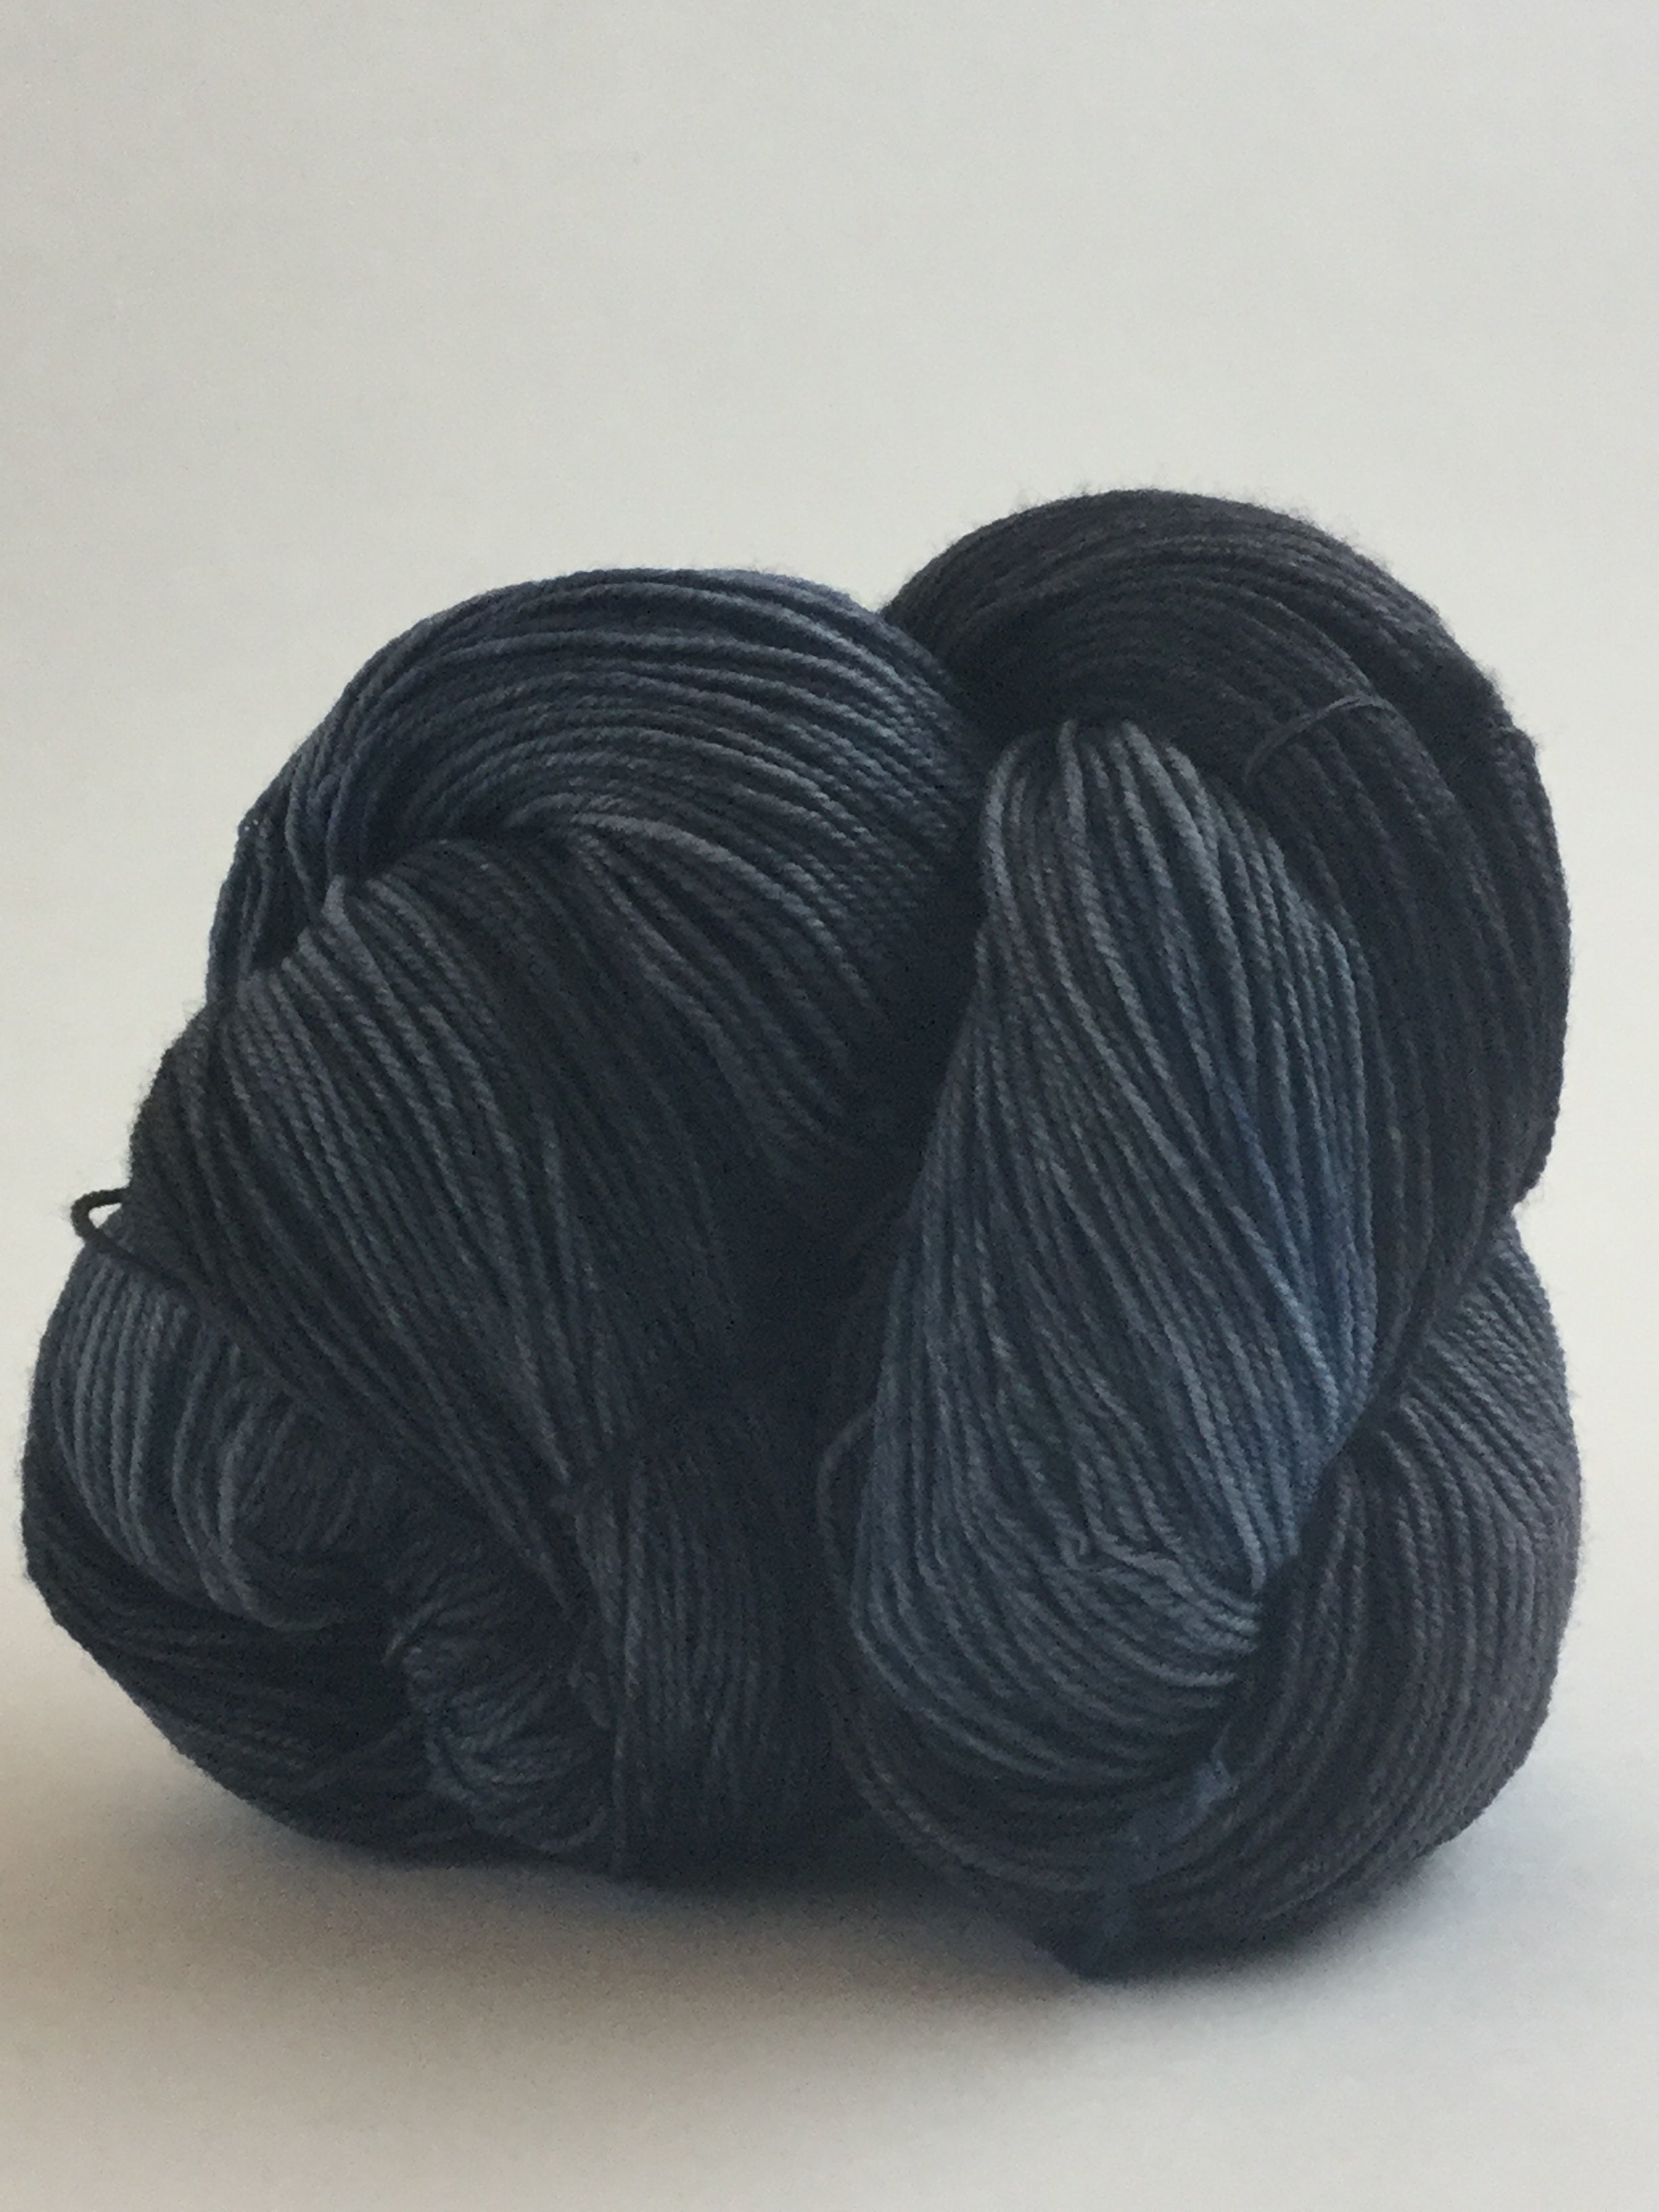 Malabrigo Sock yarn